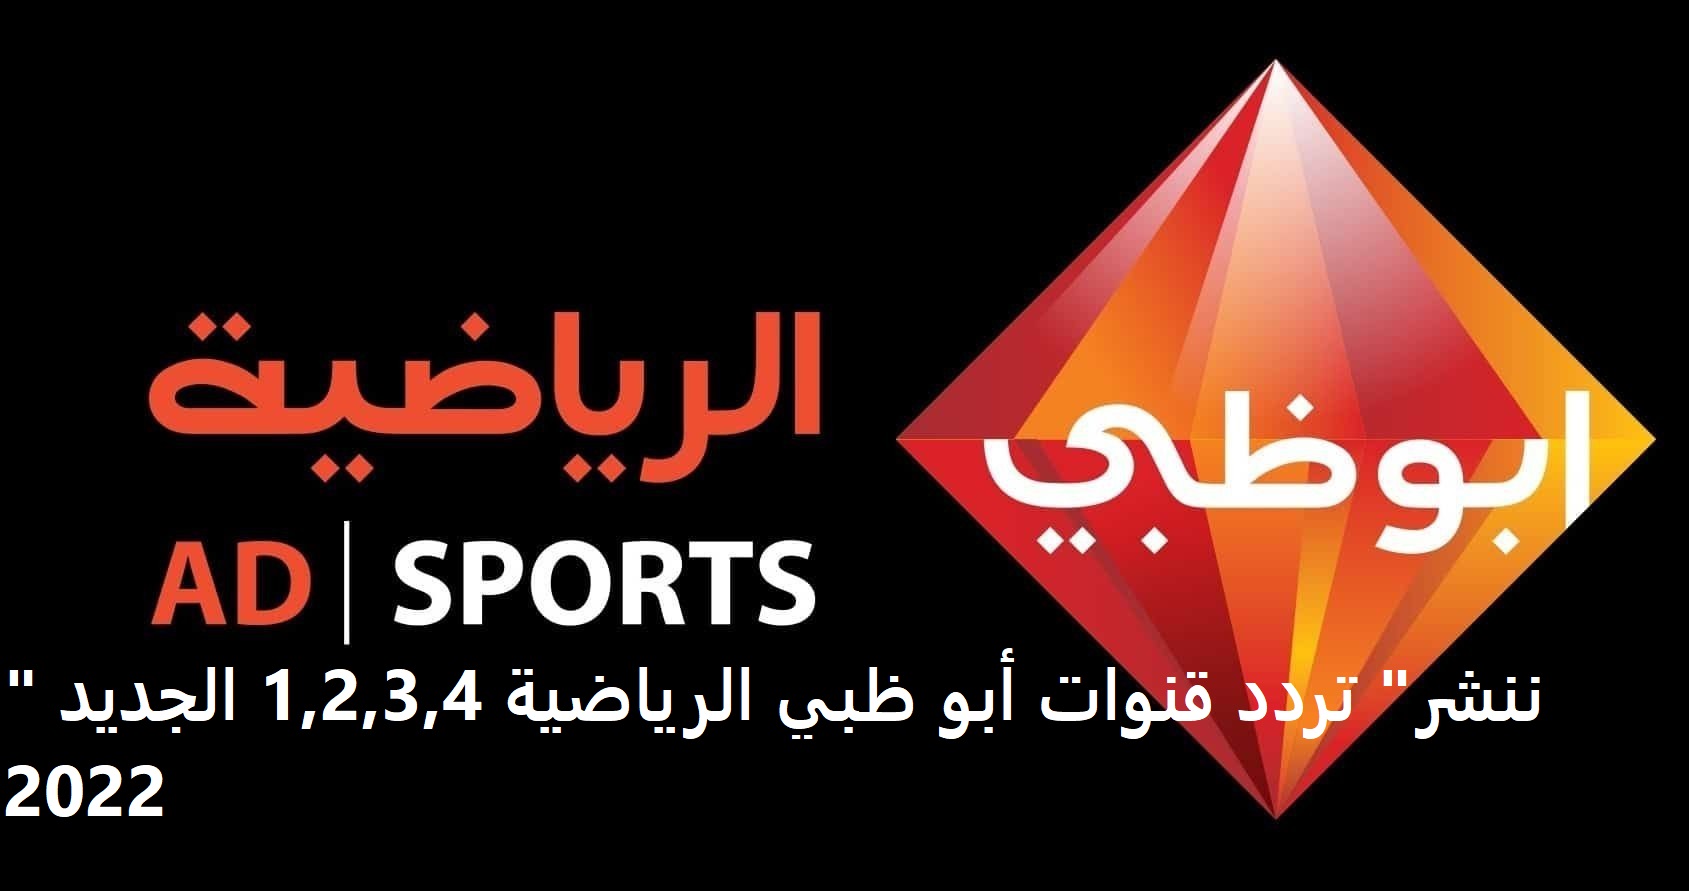 "ننشر" تردد قنوات أبو ظبي الرياضية 1,2,3,4 الجديد 2022